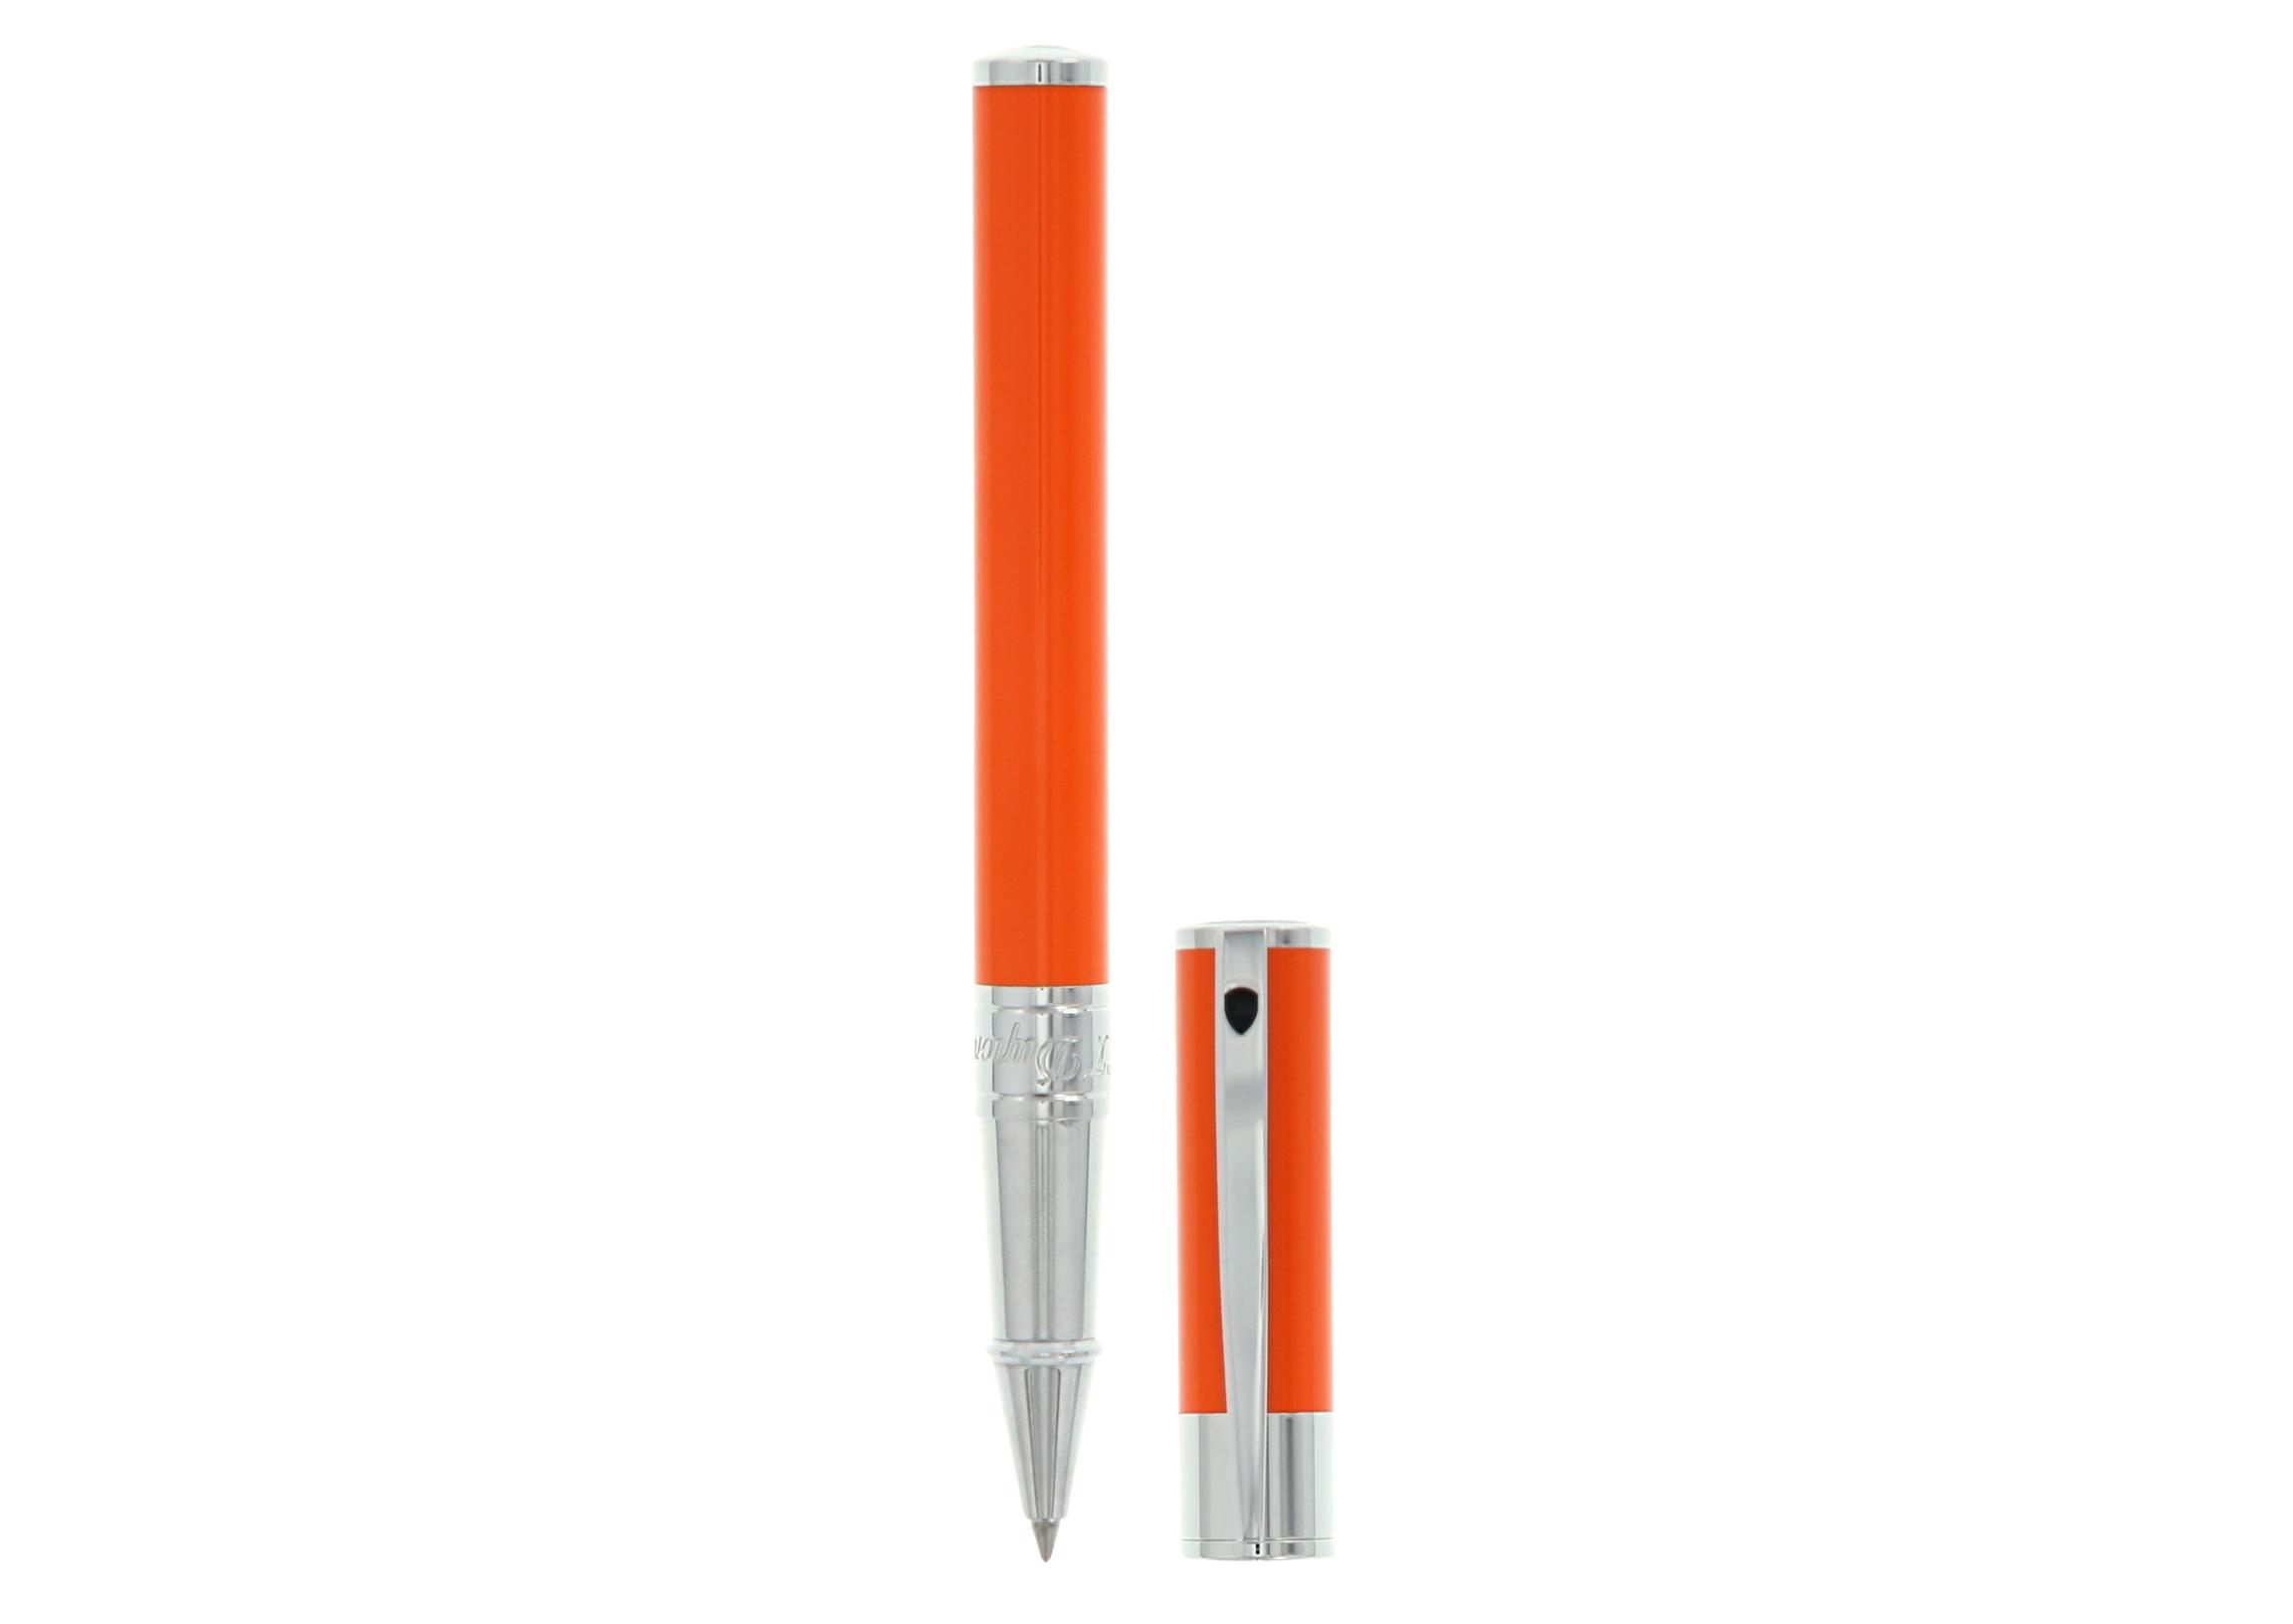 Penna S.T. Dupont D Initial indossa la tendenza dell&#8217;arancione